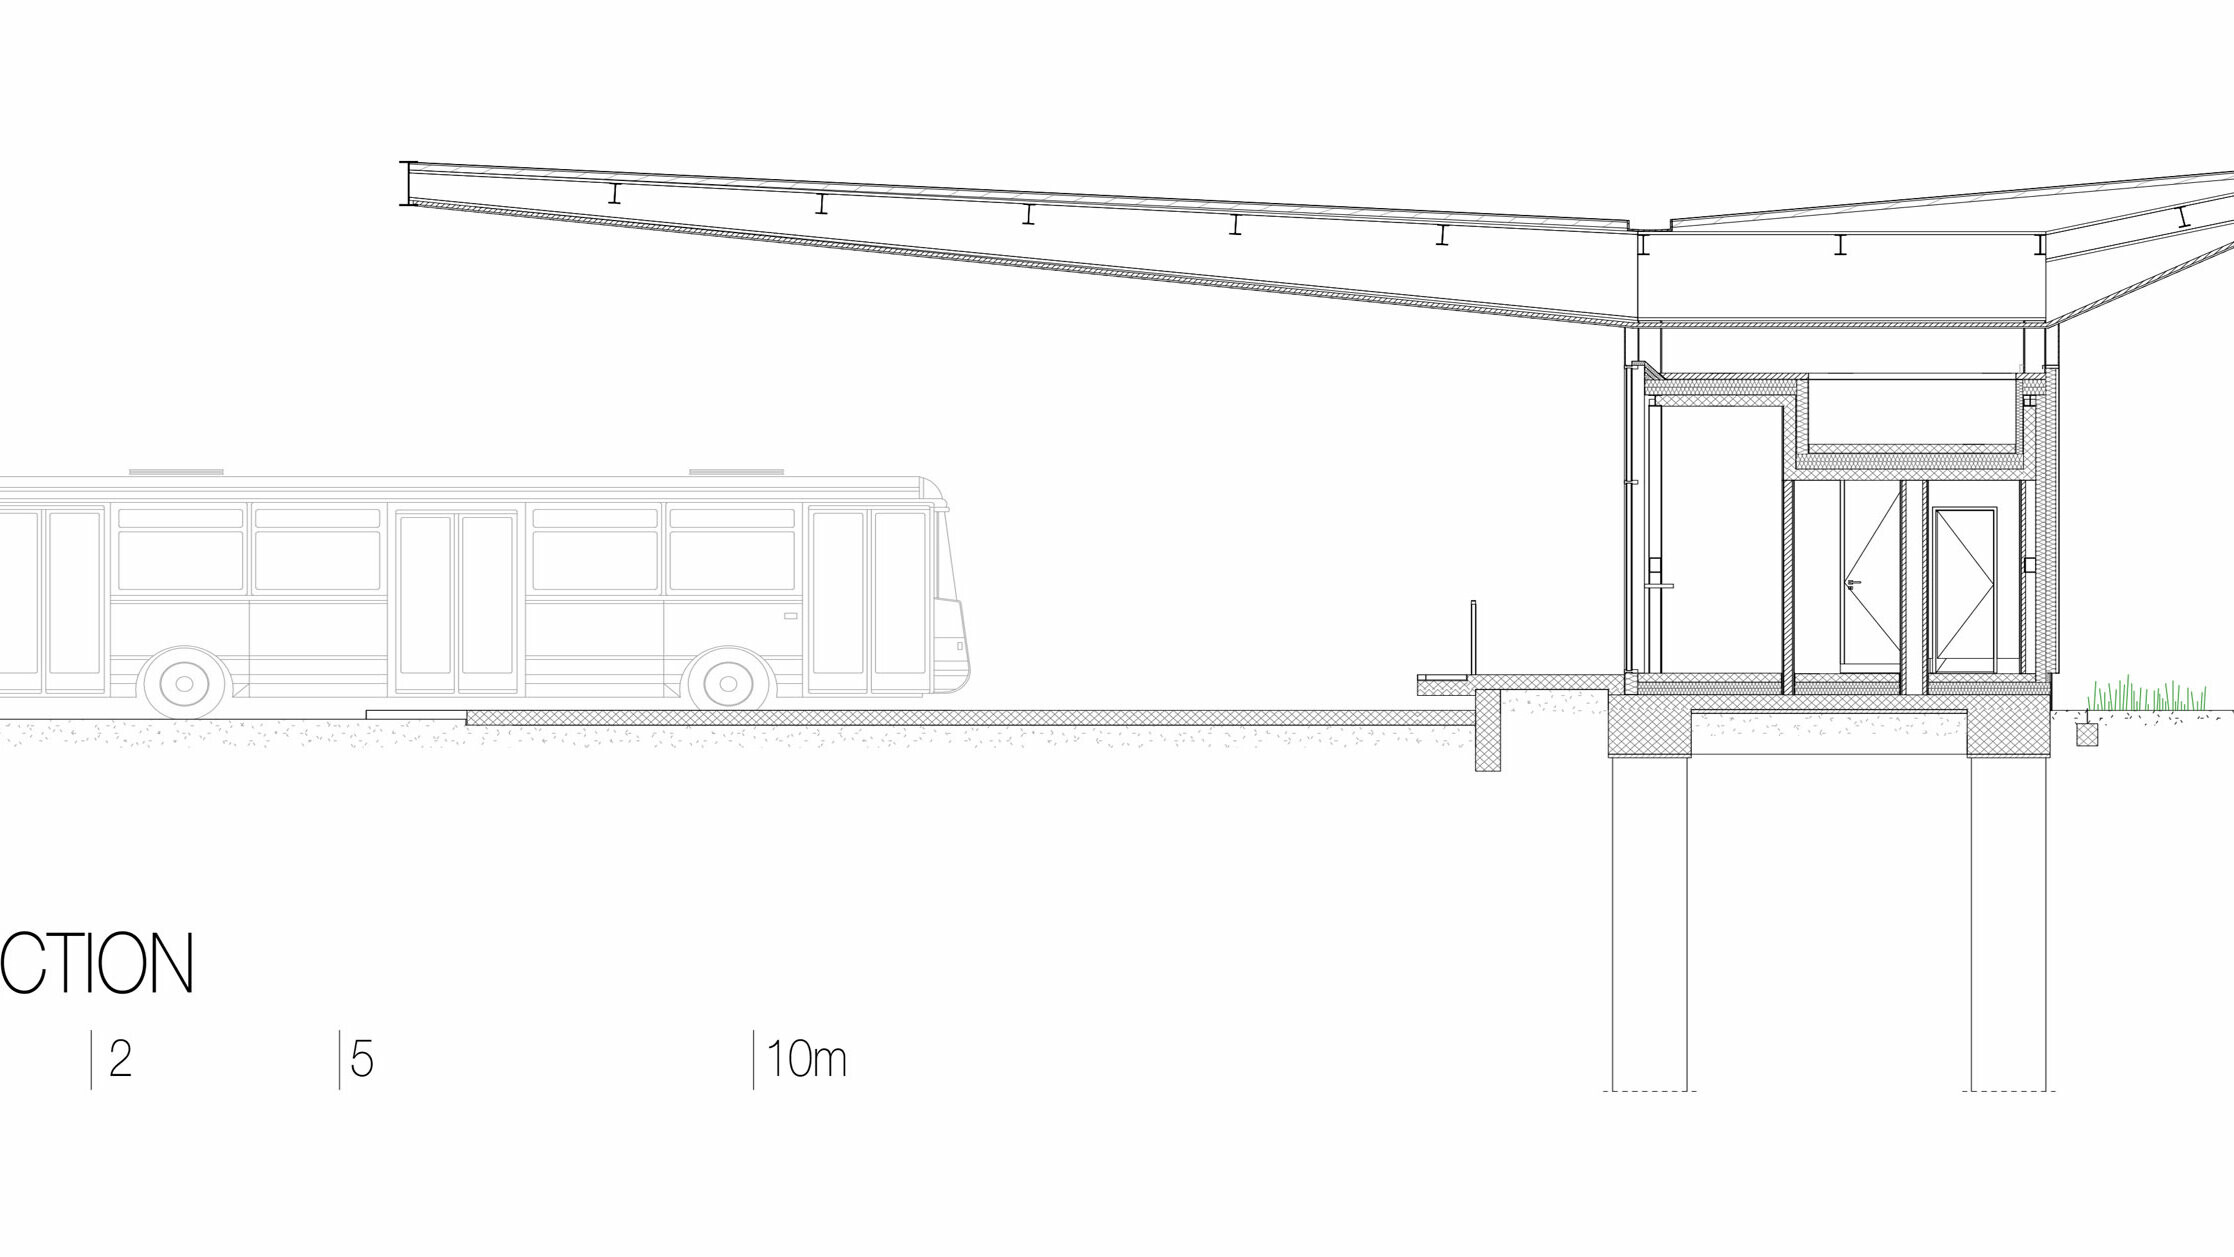 Na výkrese je příčný řez autobusovou zastávkou "Autobusni Kolodvor Slavonski Brod" v Chorvatsku. Sekce ilustruje konstrukci budovy, včetně bílé střechy PREFA z Prefalz, která spočívá na štíhlých sloupech a přesahuje oblasti pod nimi. Interiér zastávky je umístěn pod střechou s jasnými liniemi a velkými prosklenými plochami. Výkres také ukazuje základovou konstrukci a podzemní podpěry, které podpírají konstrukci. Pro ilustraci proporcí je vlevo zobrazena sběrnice. Příčný řez zdůrazňuje moderní a funkční konstrukci zastávky i integraci skla a hliníku do designu.